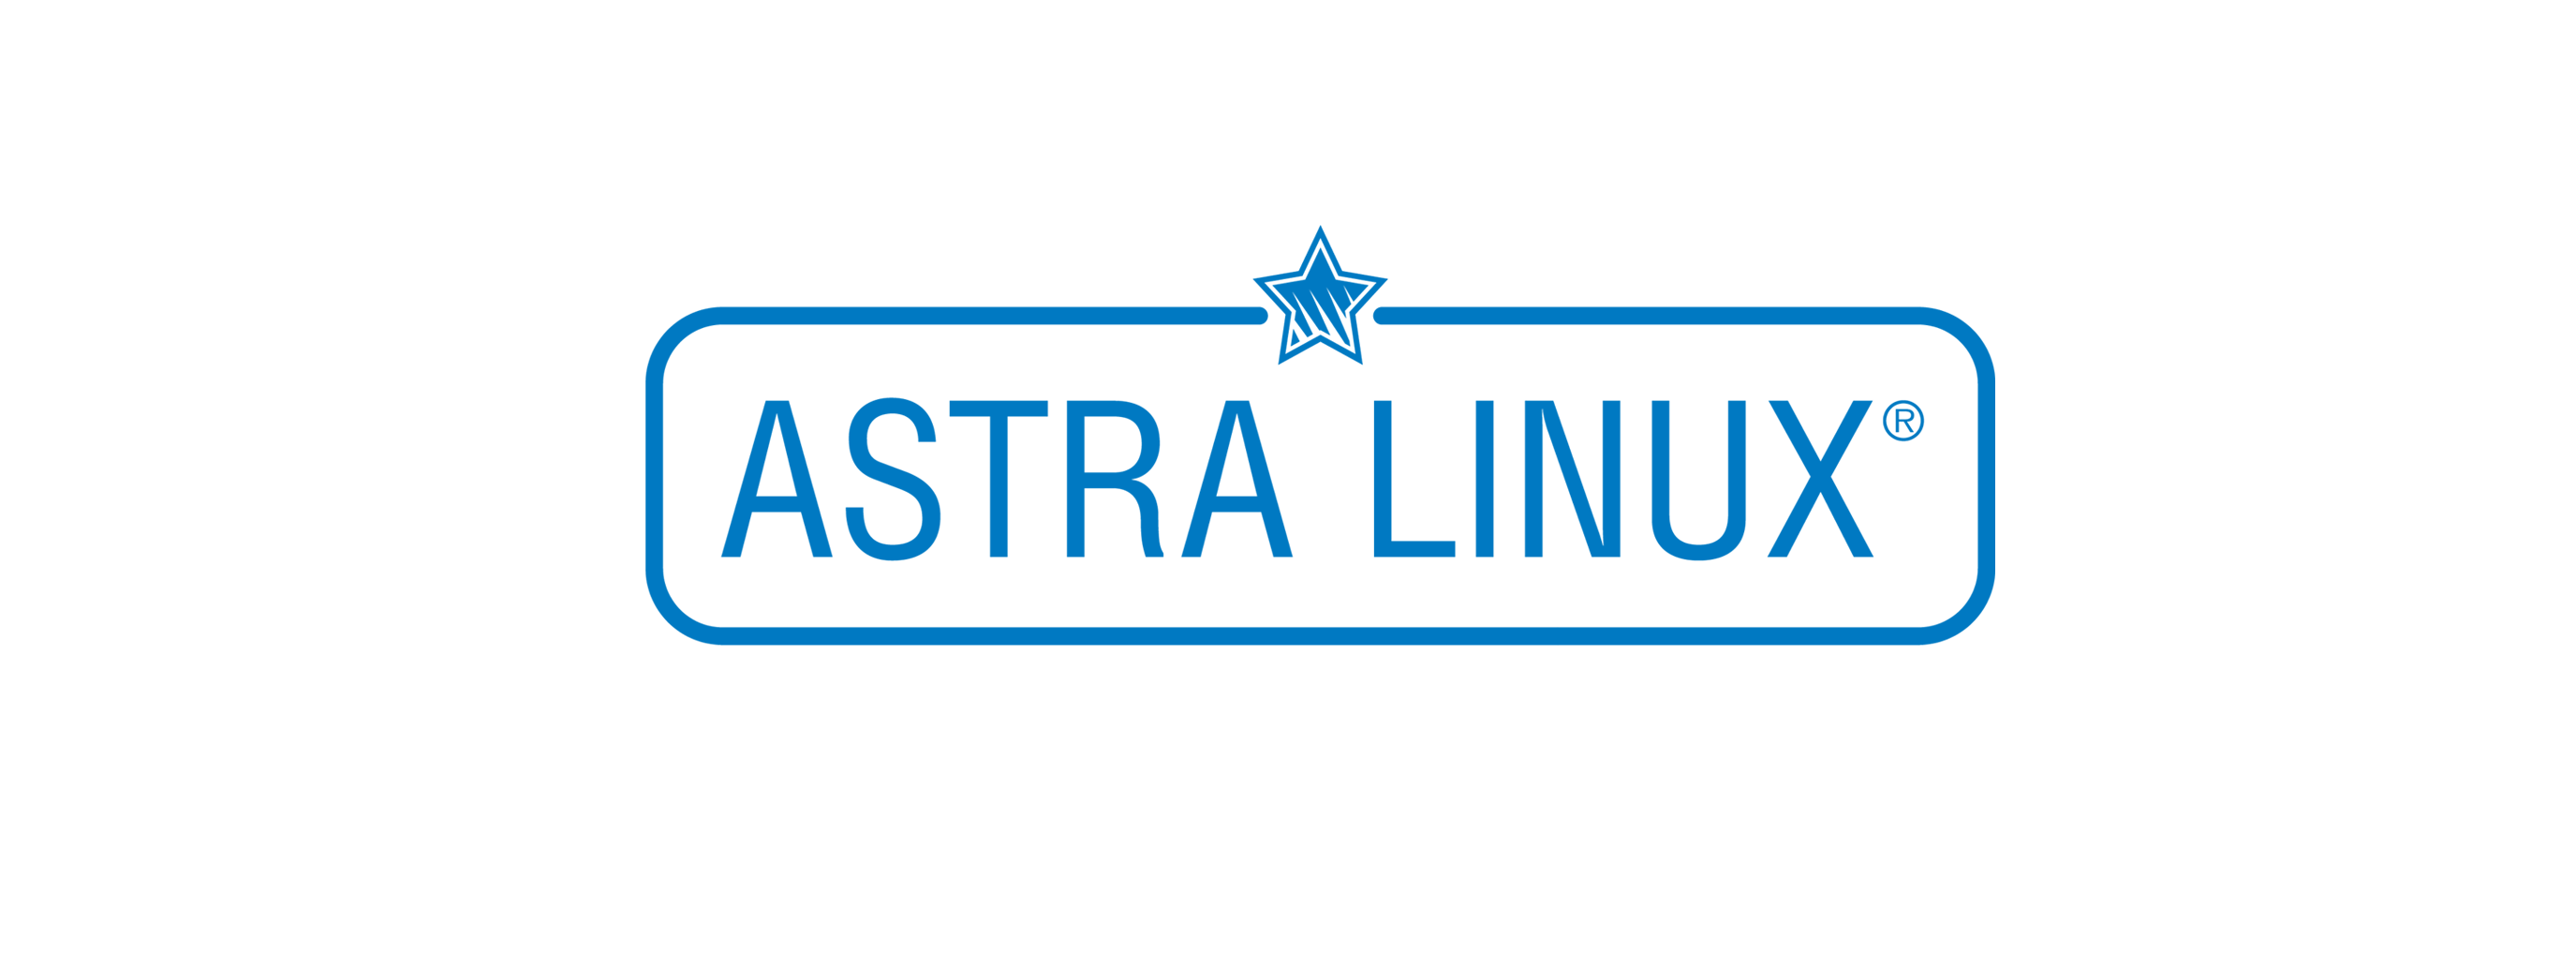 Лицензия РусБИТех Astra Linux Special Edition (очередное обновление 1.7), уровень защищенности Максимальный (Смоленск), РУСБ.10015-01 (ФСТЭК), Russian, на 36 месяцев базовая лицензия для виртуального сервера, электронный ключ (OS2101X8617COP000VS02-PO36)